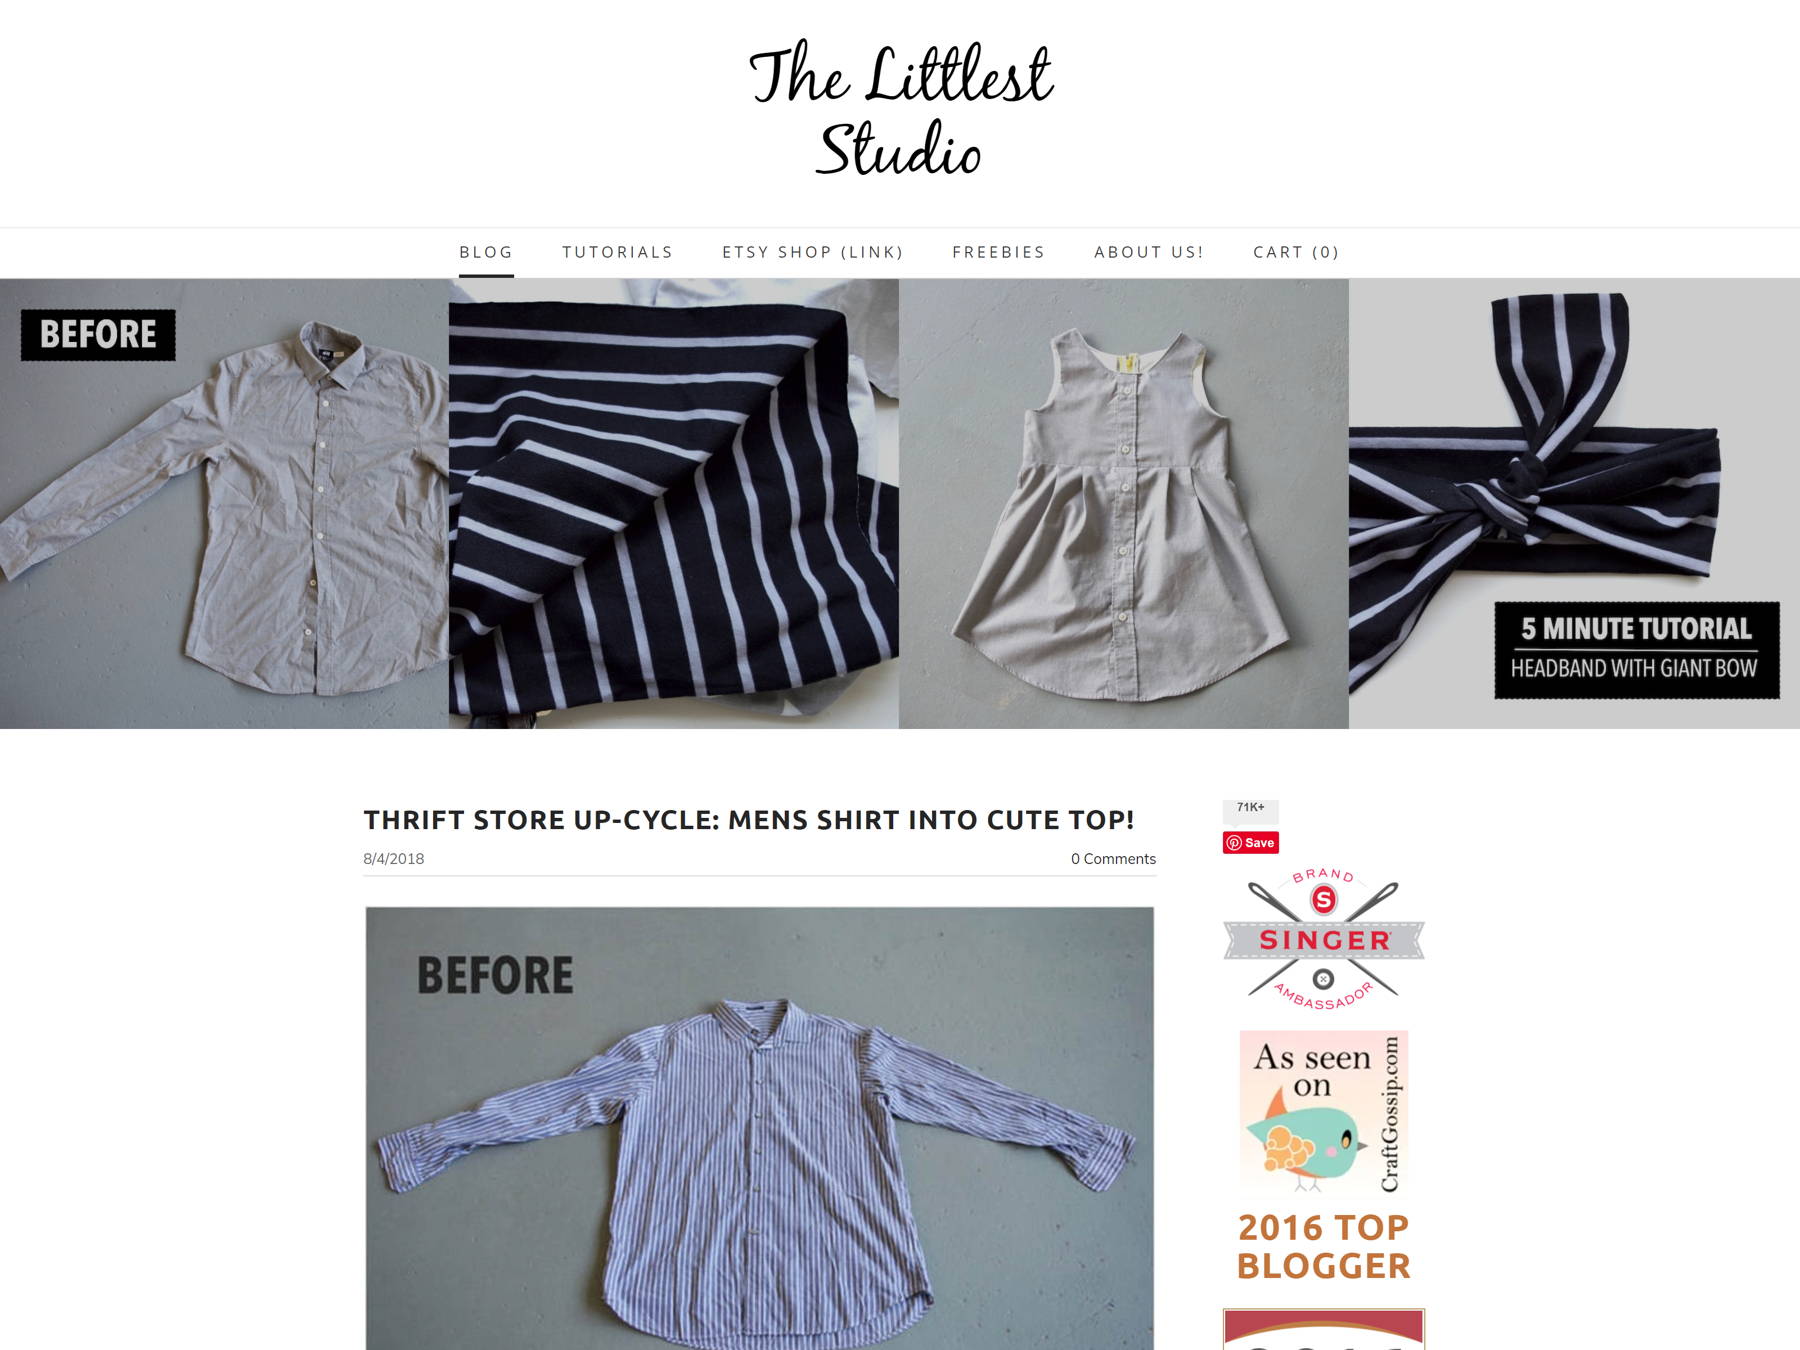 Скриншот The Littlest Studio из коллекции примеров блога.